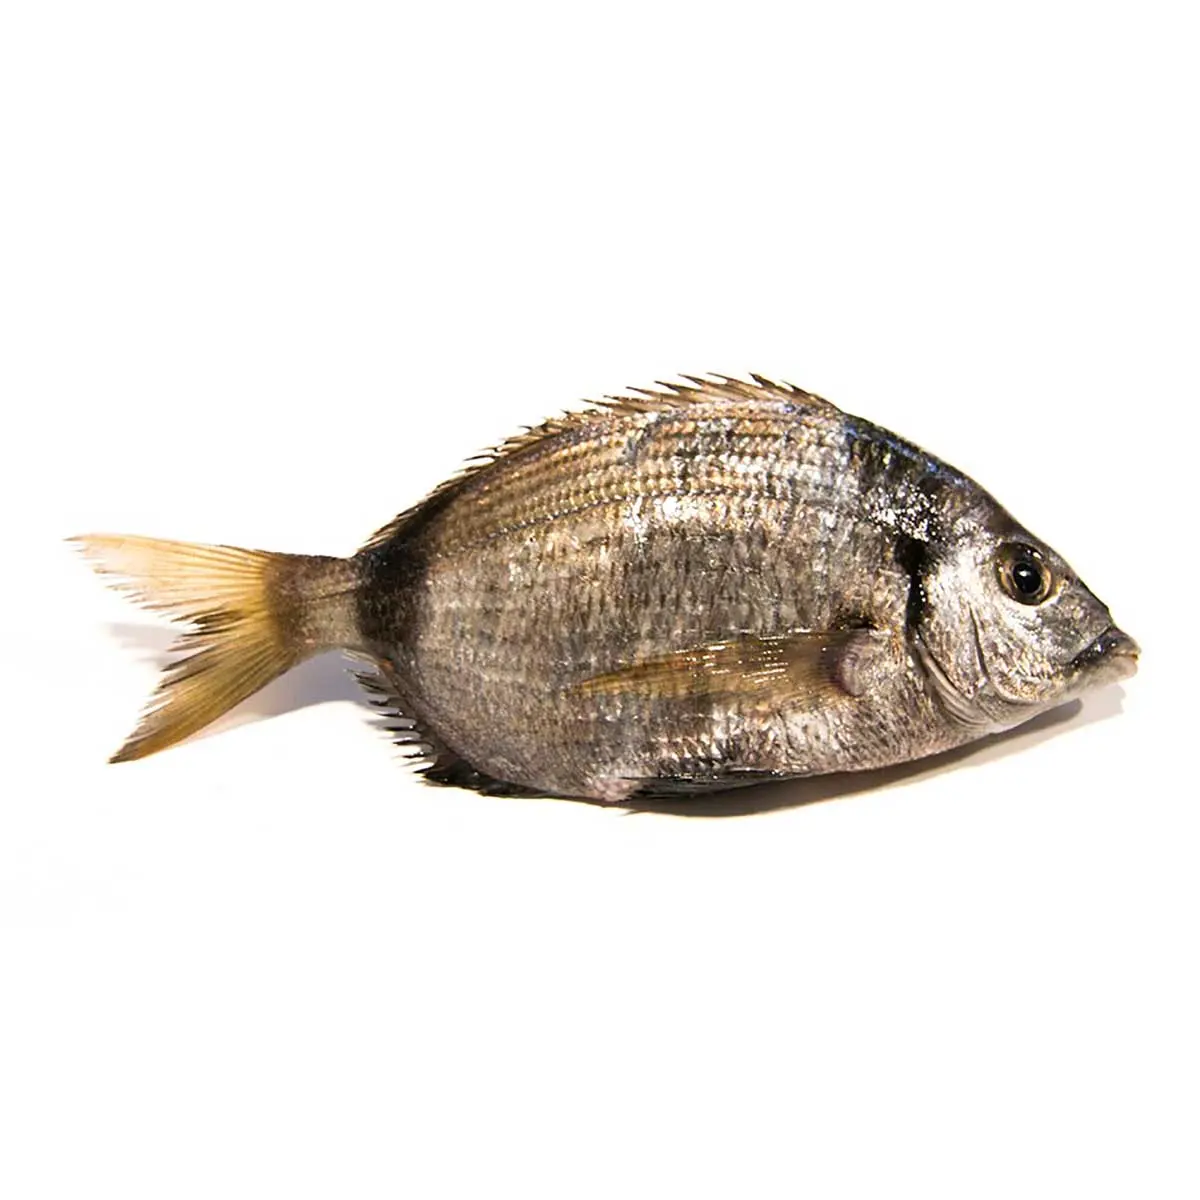 pescado sargo precio - Qué tipo de pescado es el sargo